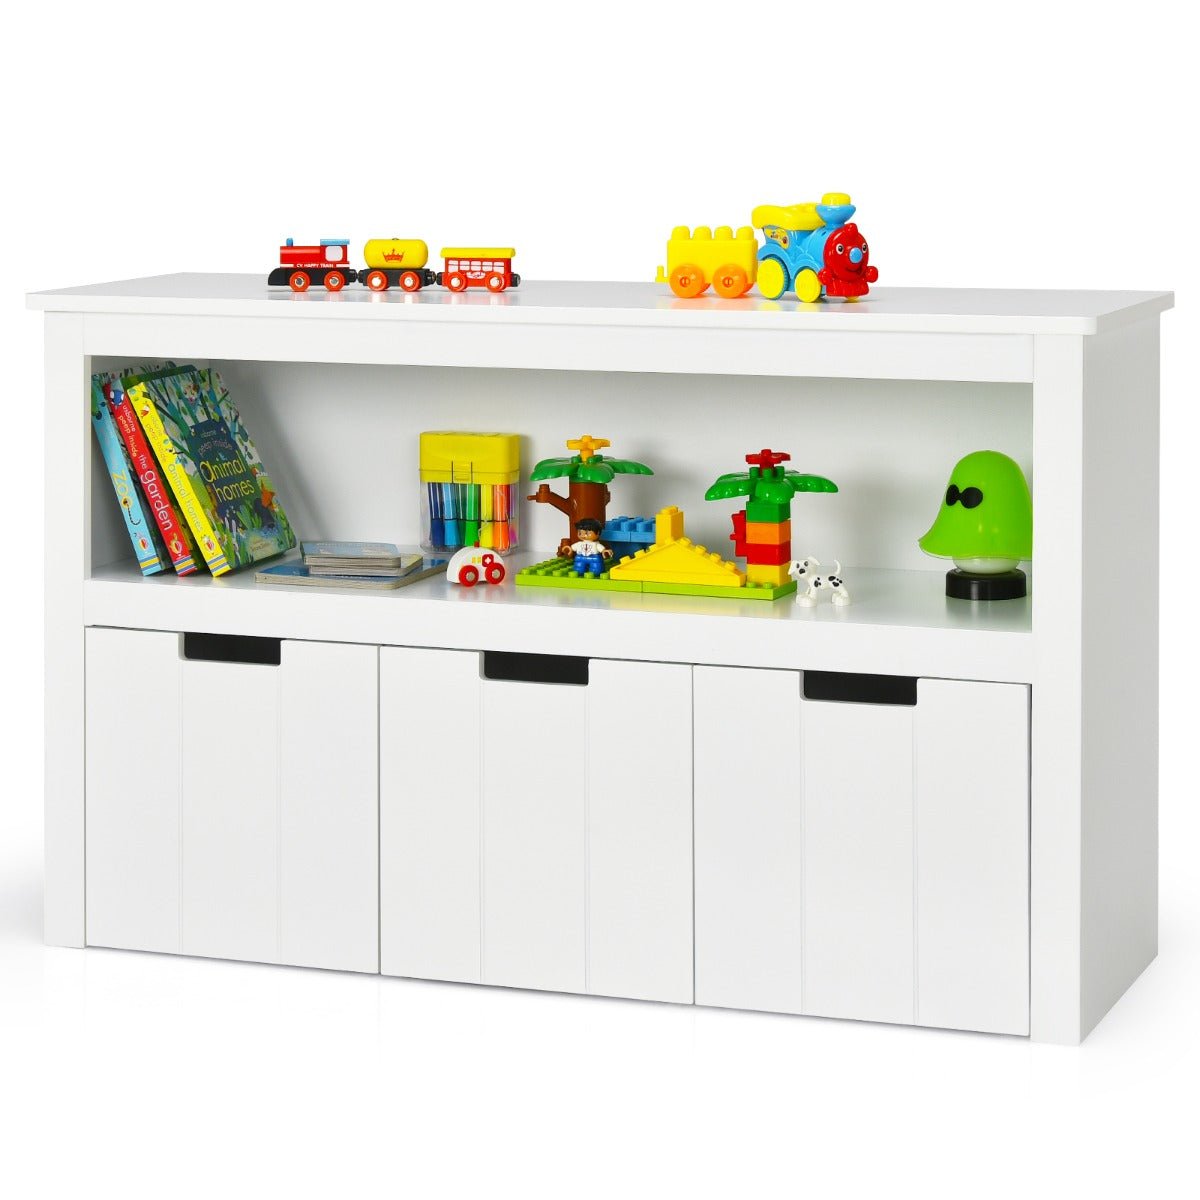 Toy Storage Organizer for Children - 3 Drawers to Declutter